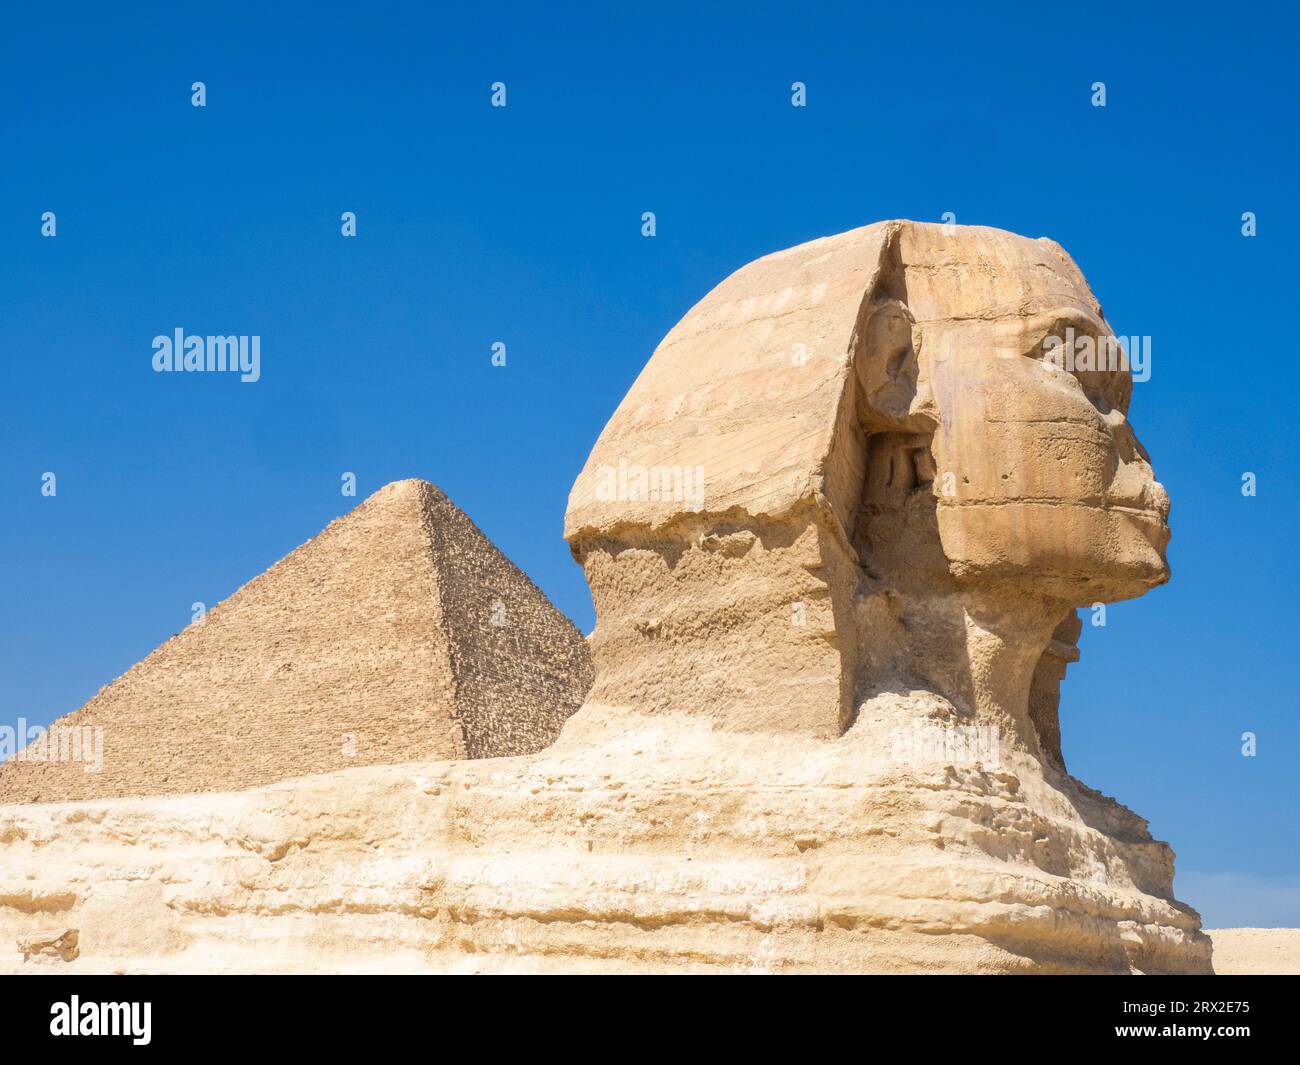 Le Grand Sphinx de Gizeh près de la Grande Pyramide de Gizeh, la plus ancienne des sept merveilles du monde, Gizeh, près du Caire, Egypte Afrique Banque D'Images